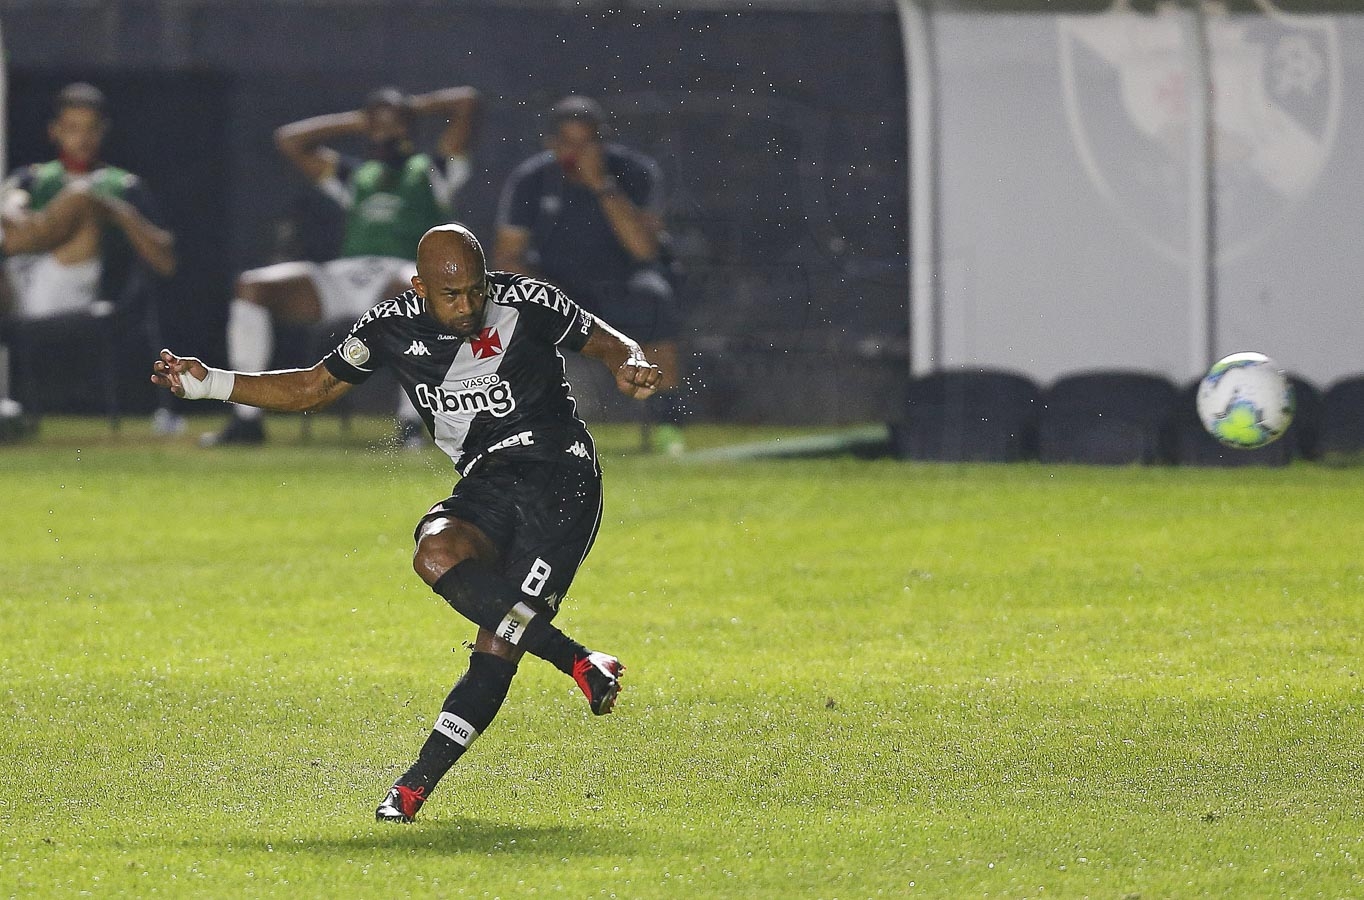 Vasco vence Sport na estreia do Brasileirão com 2 gols de Fellipe Bastos